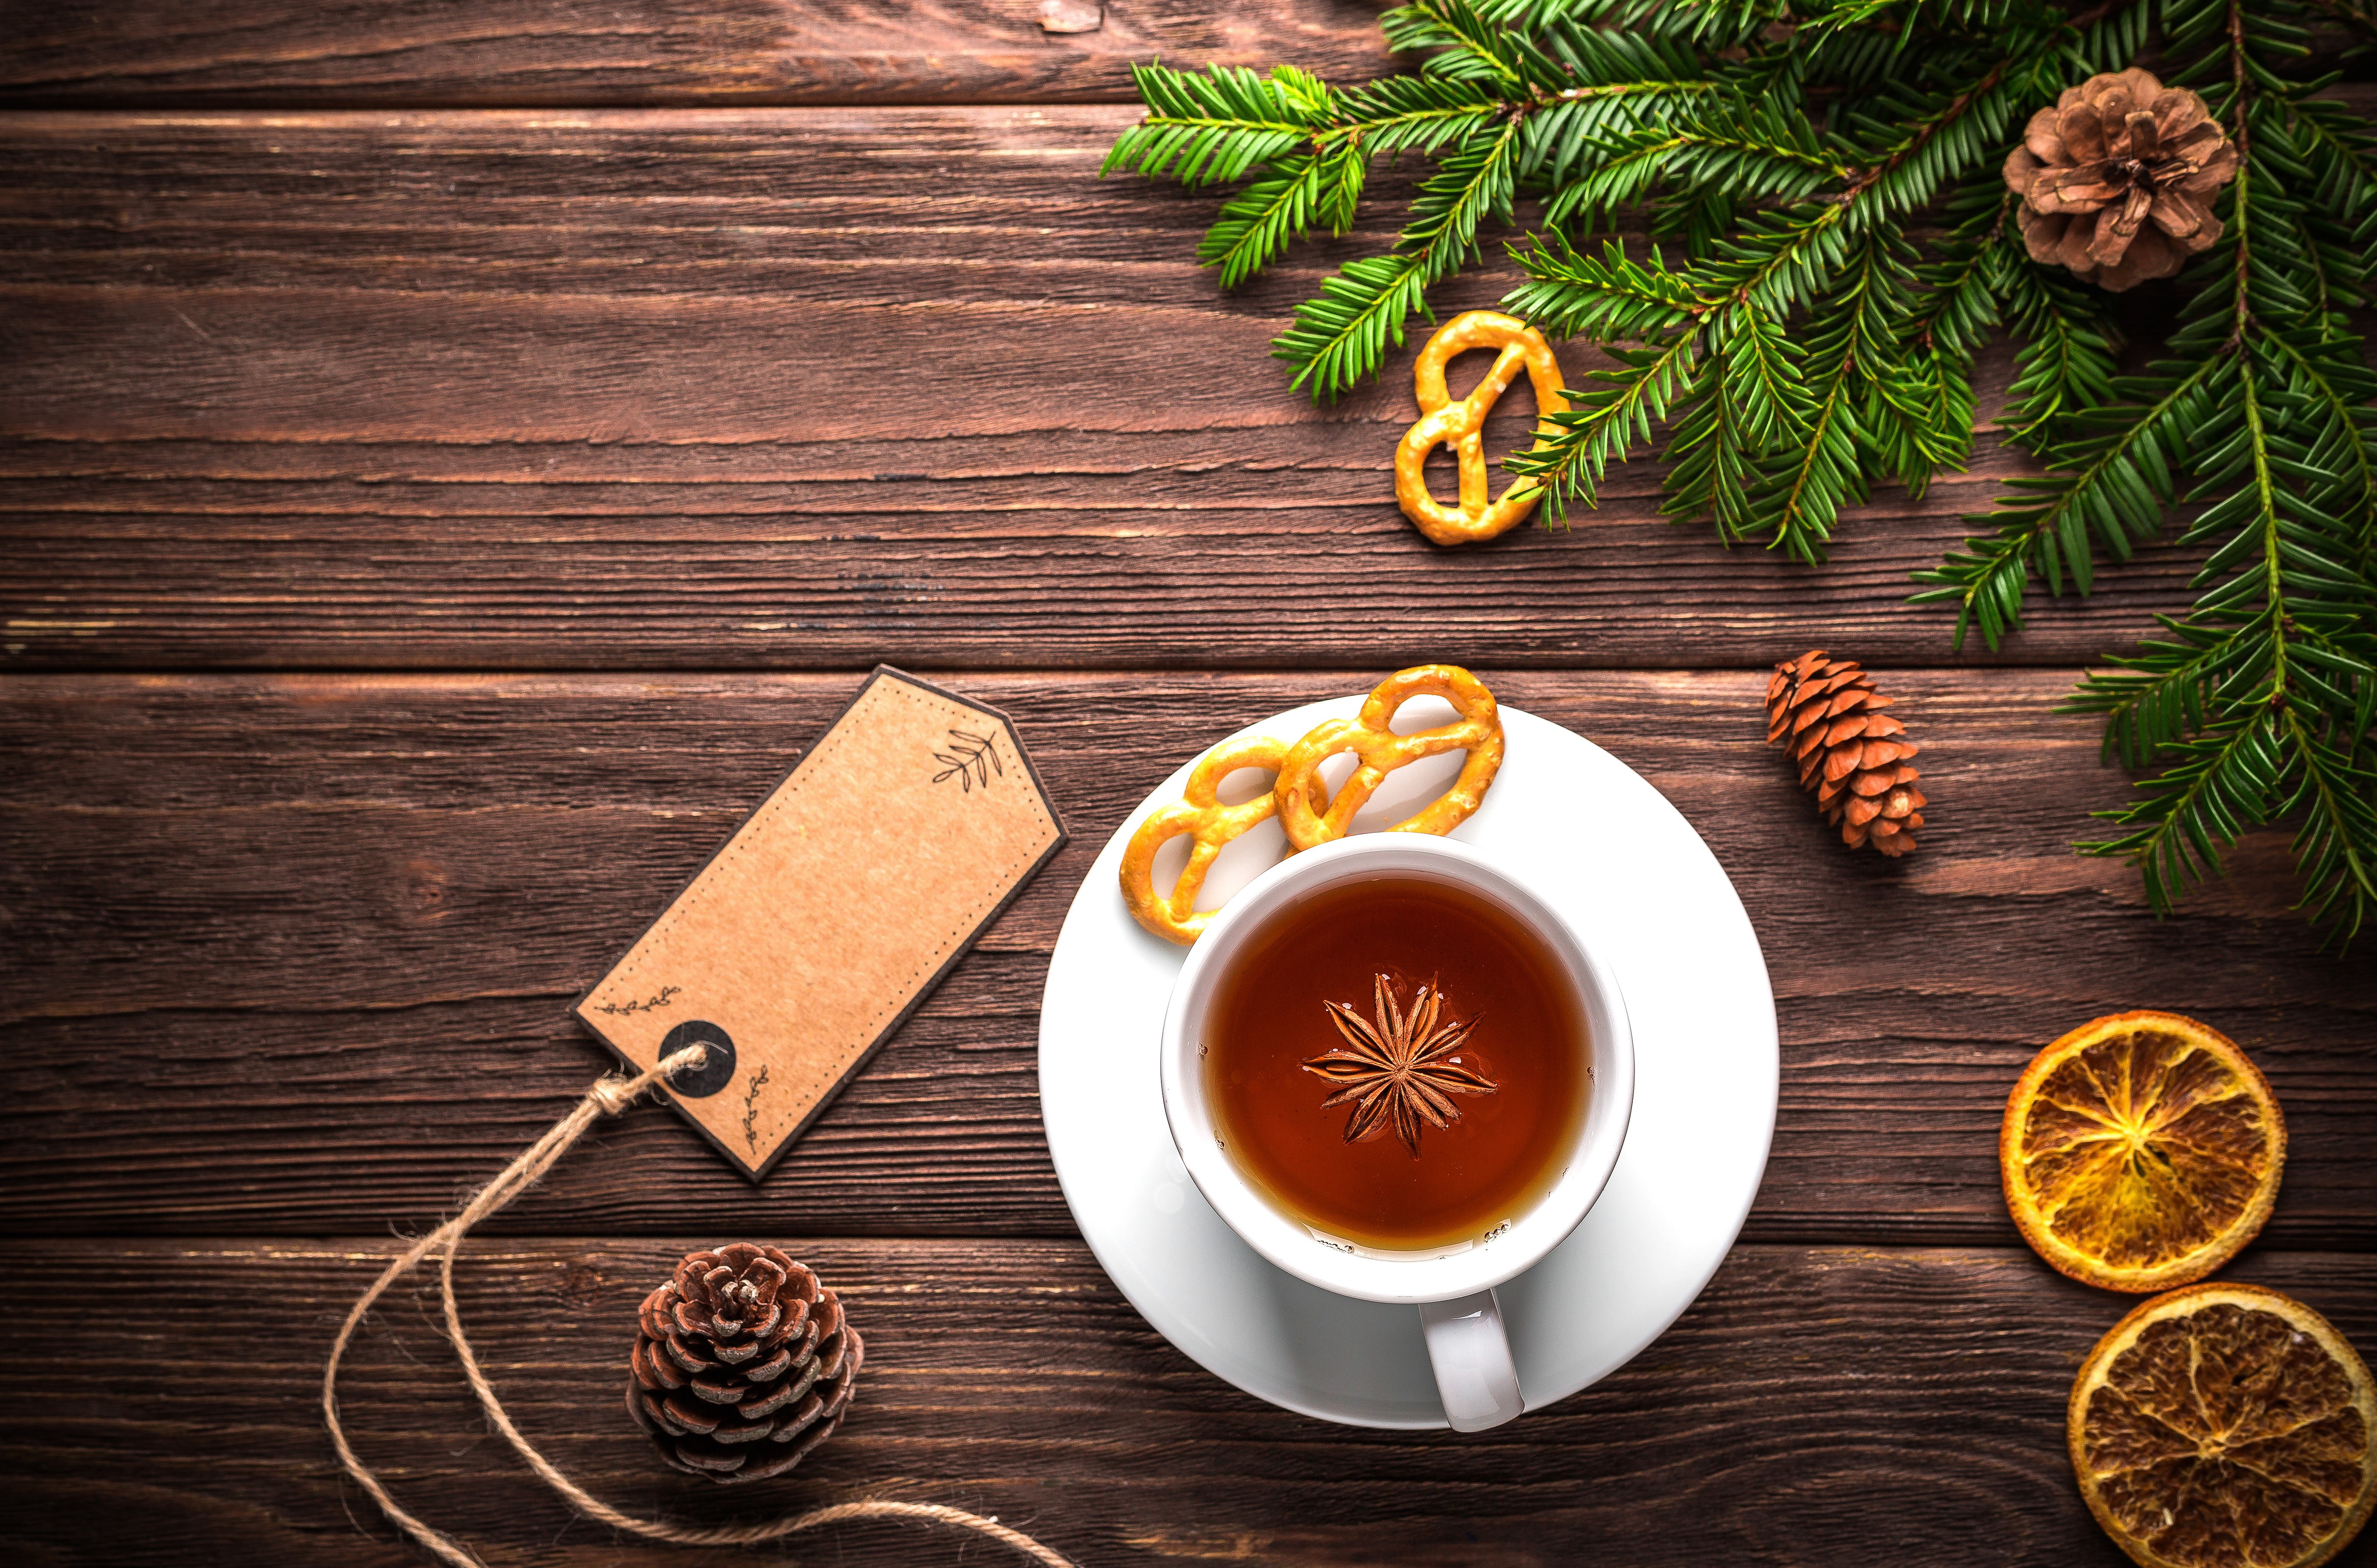 Скачать обои бесплатно Еда, Печенье, Рождество, Чай, Древесина картинка на рабочий стол ПК